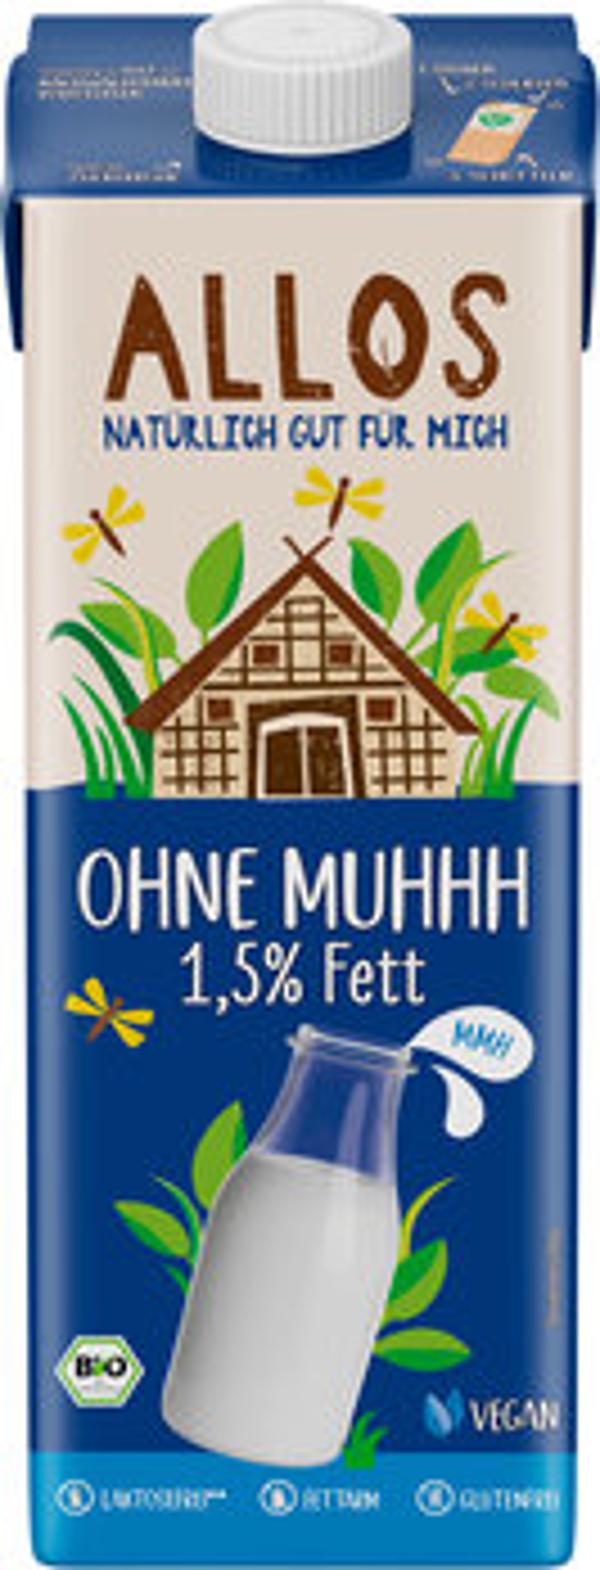 Produktfoto zu Ohne Muhhh Drink, 1,5% Fett  1l